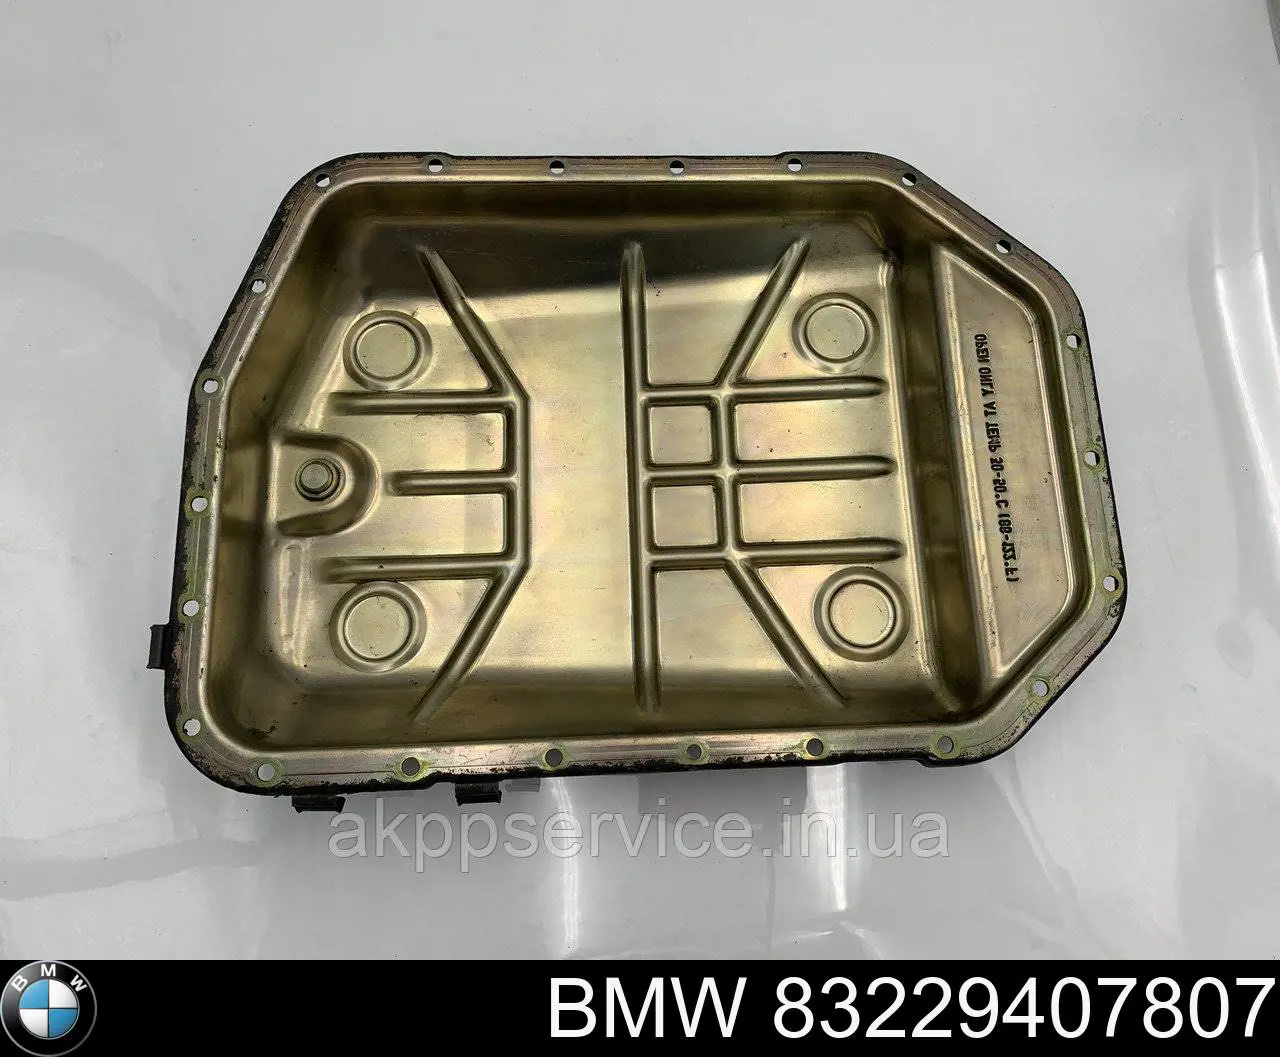  Масло трансмиссионное BMW ATF LT 71141 20 л (83229407807)